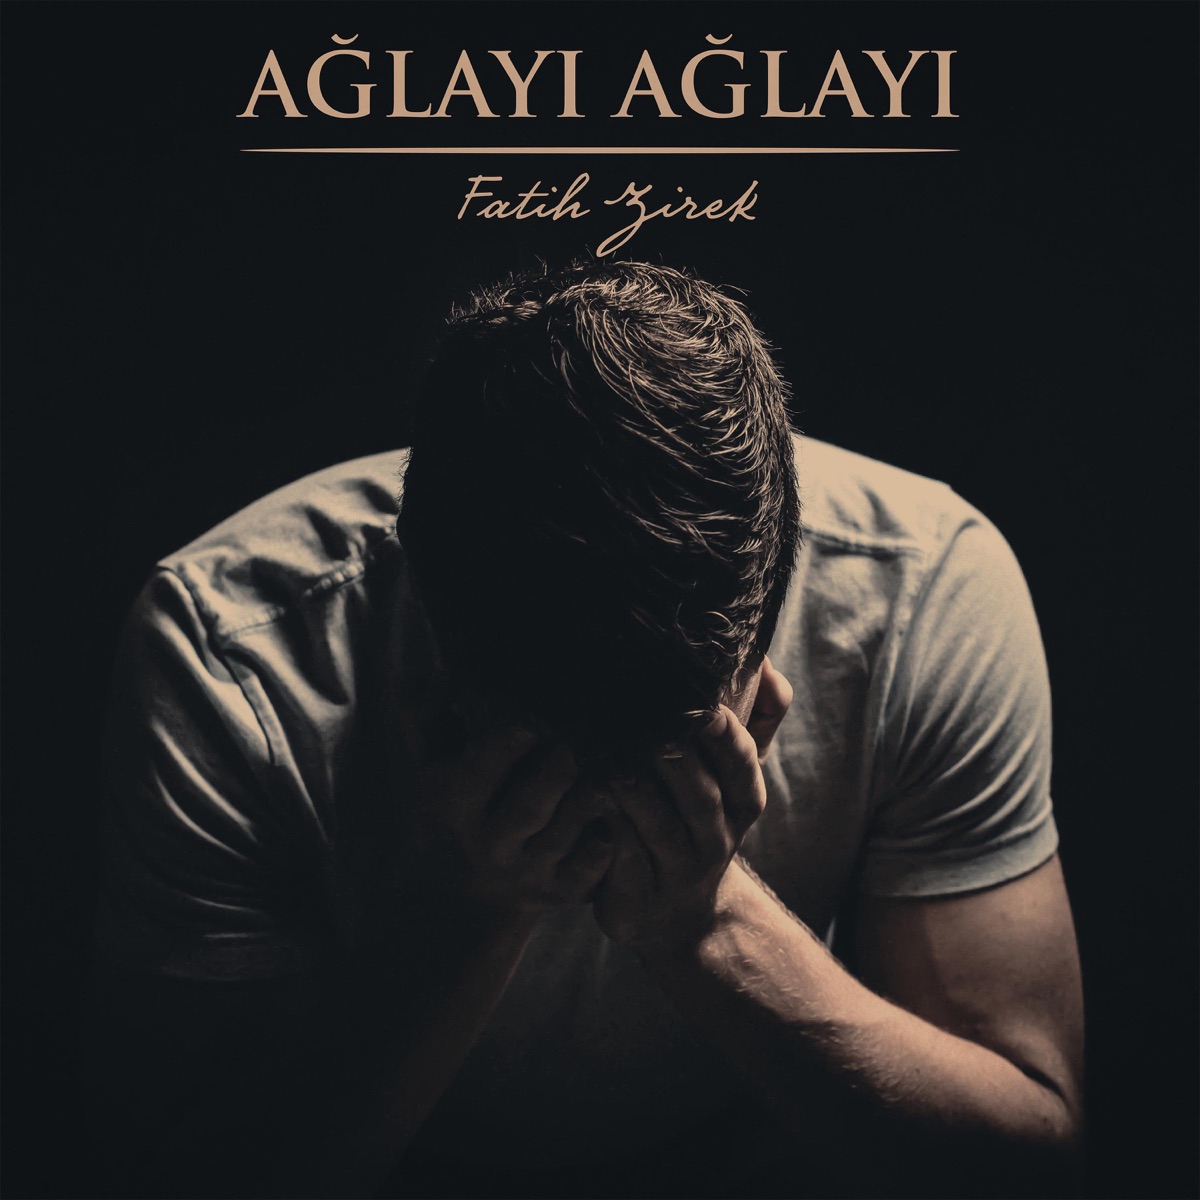 Ya İlahi Senden Bir Dileğim Var Müziksiz - Single - Album by Fatih Zirek -  Apple Music